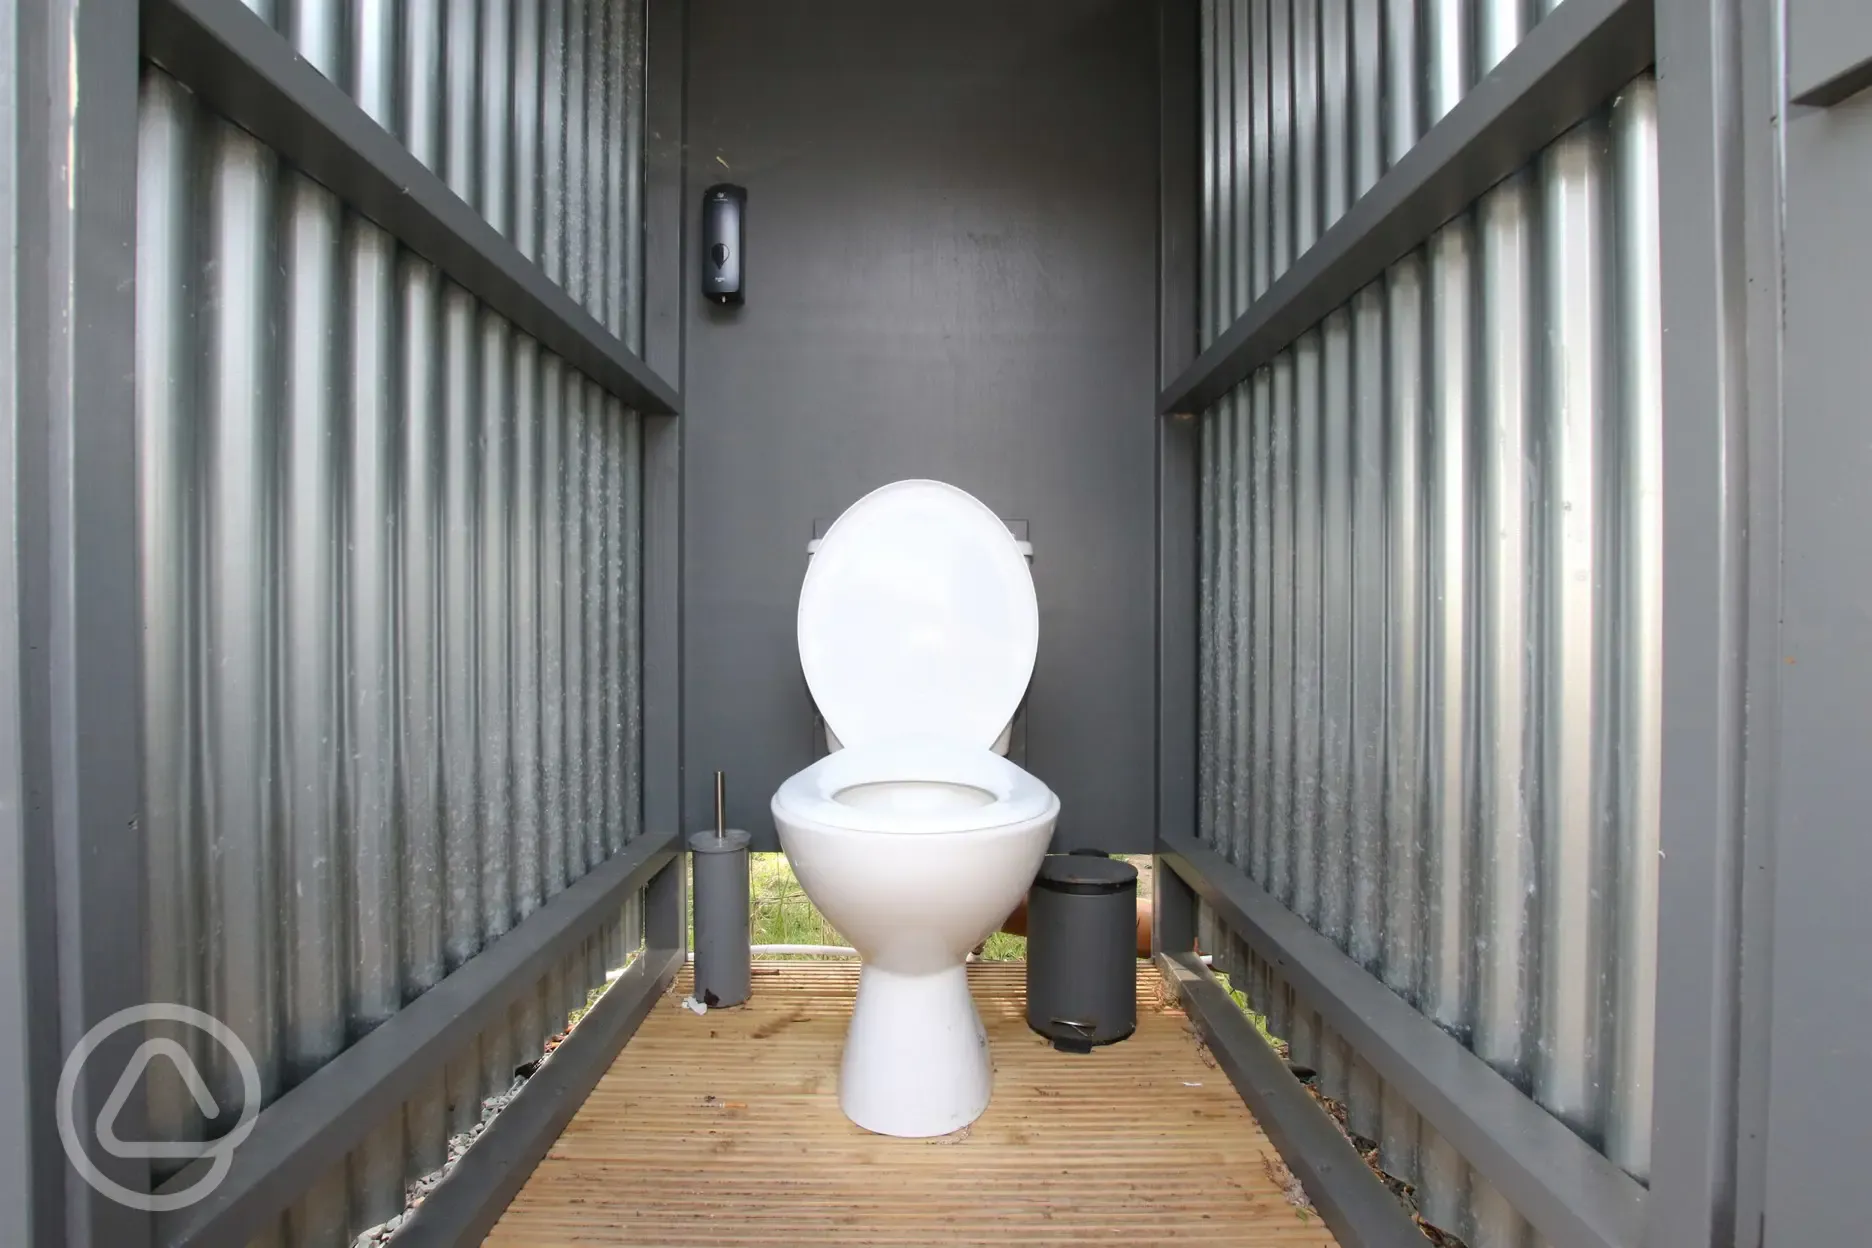 Toilet cubicles